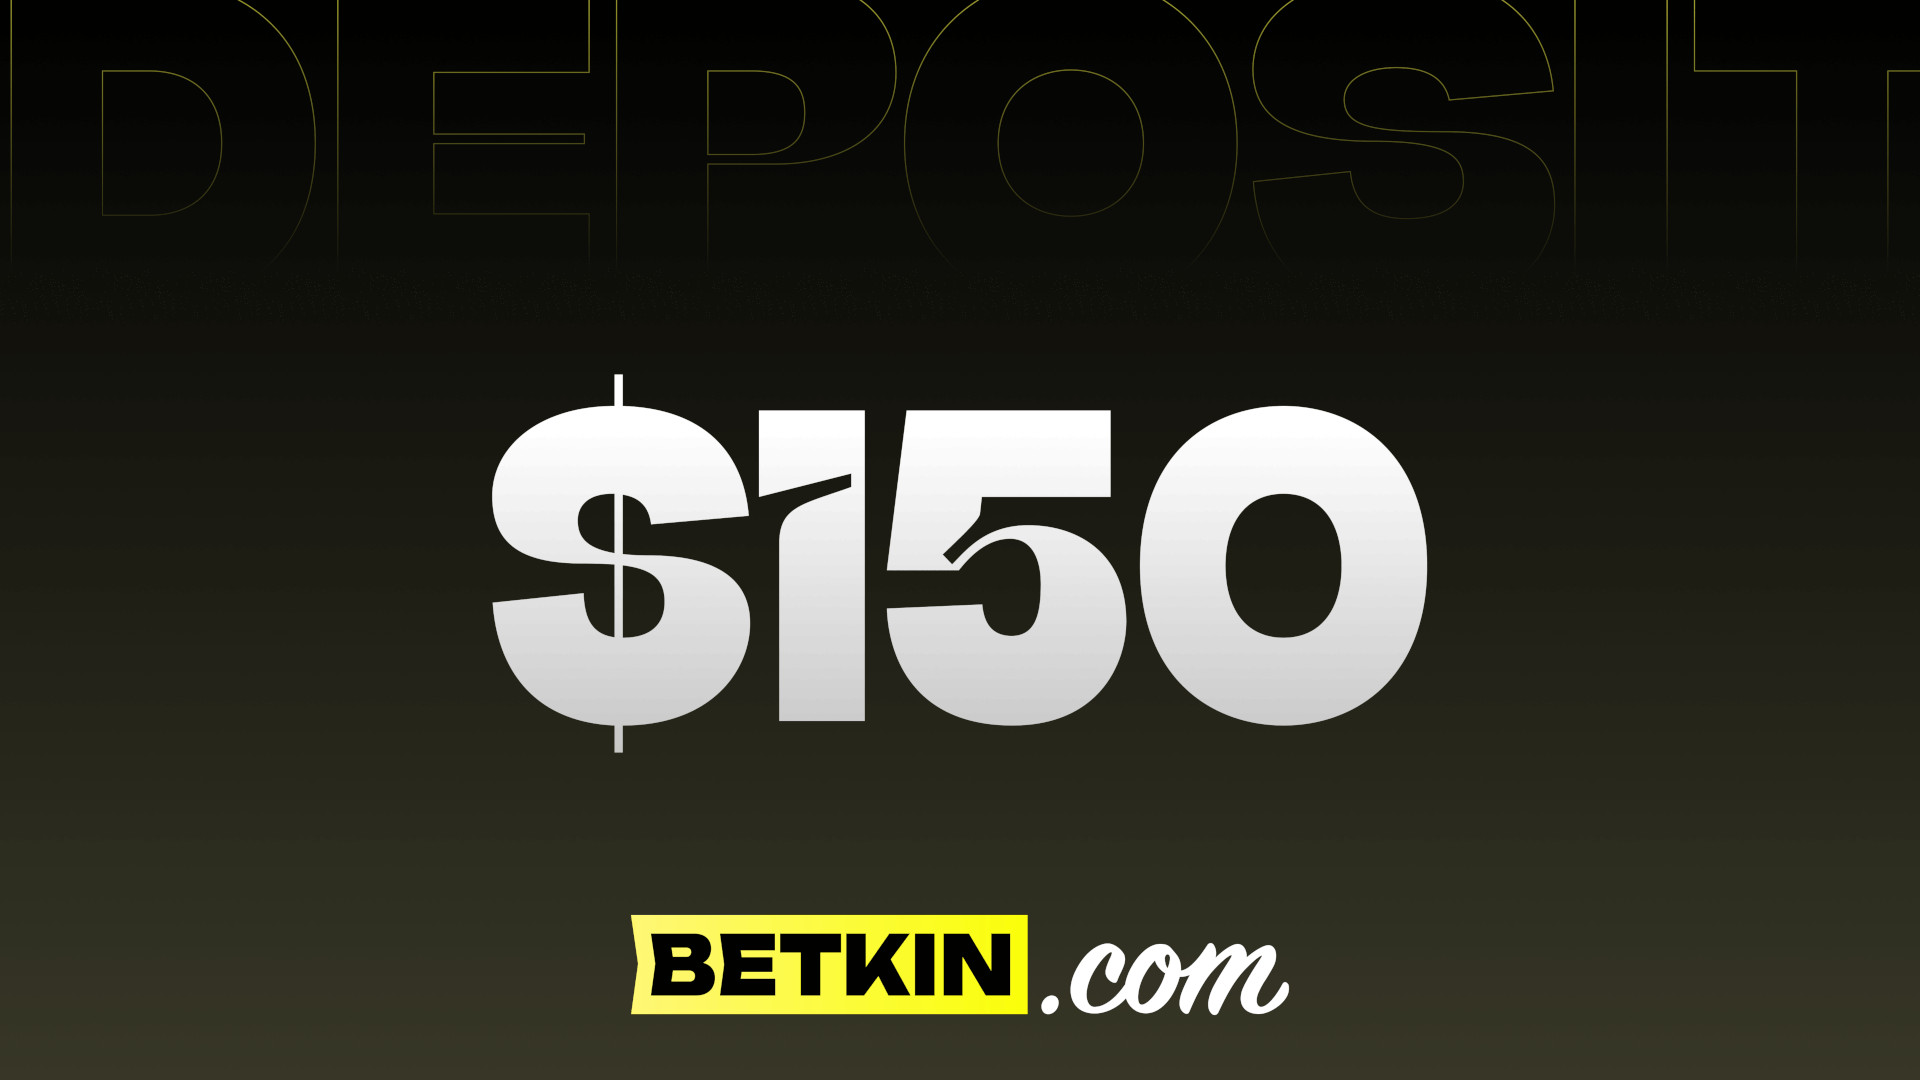 Betkin $150 Coupon $166.96